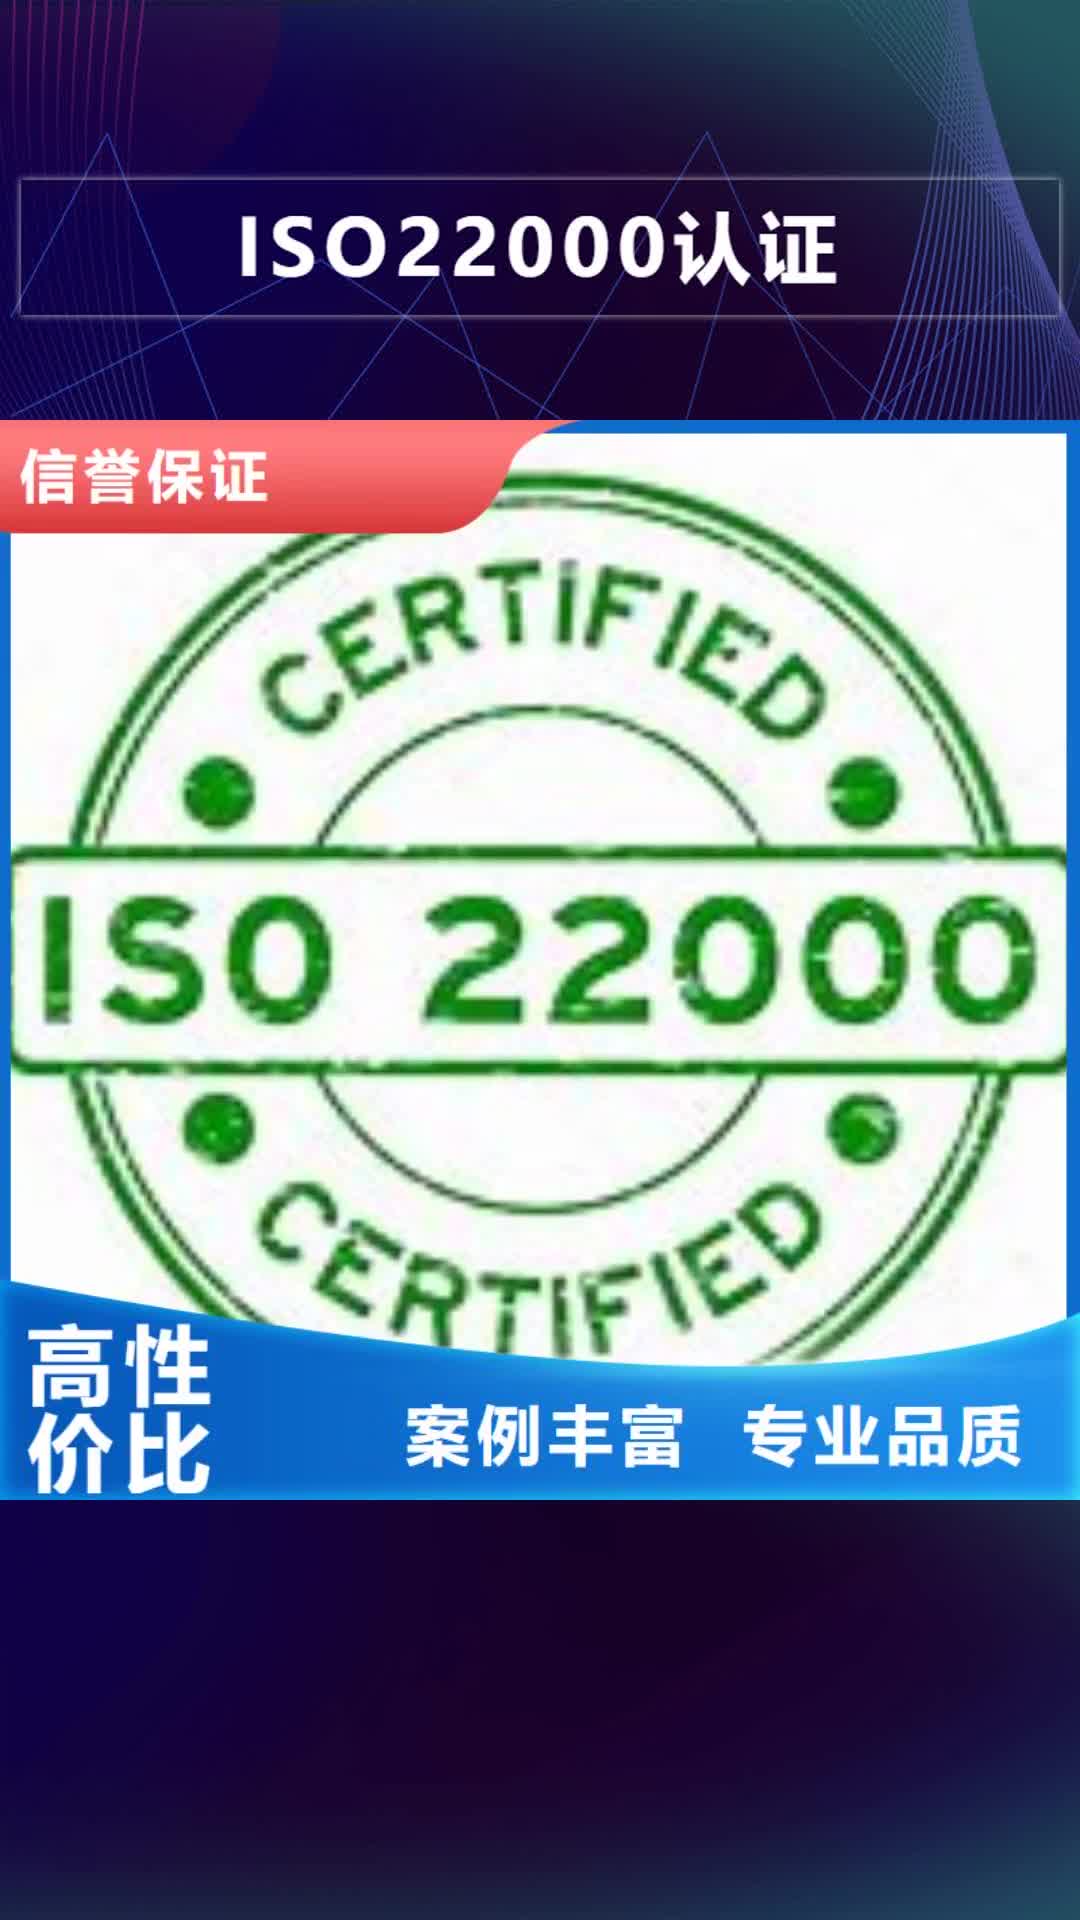 聊城【ISO22000认证】ISO9001\ISO9000\ISO14001认证好评度高